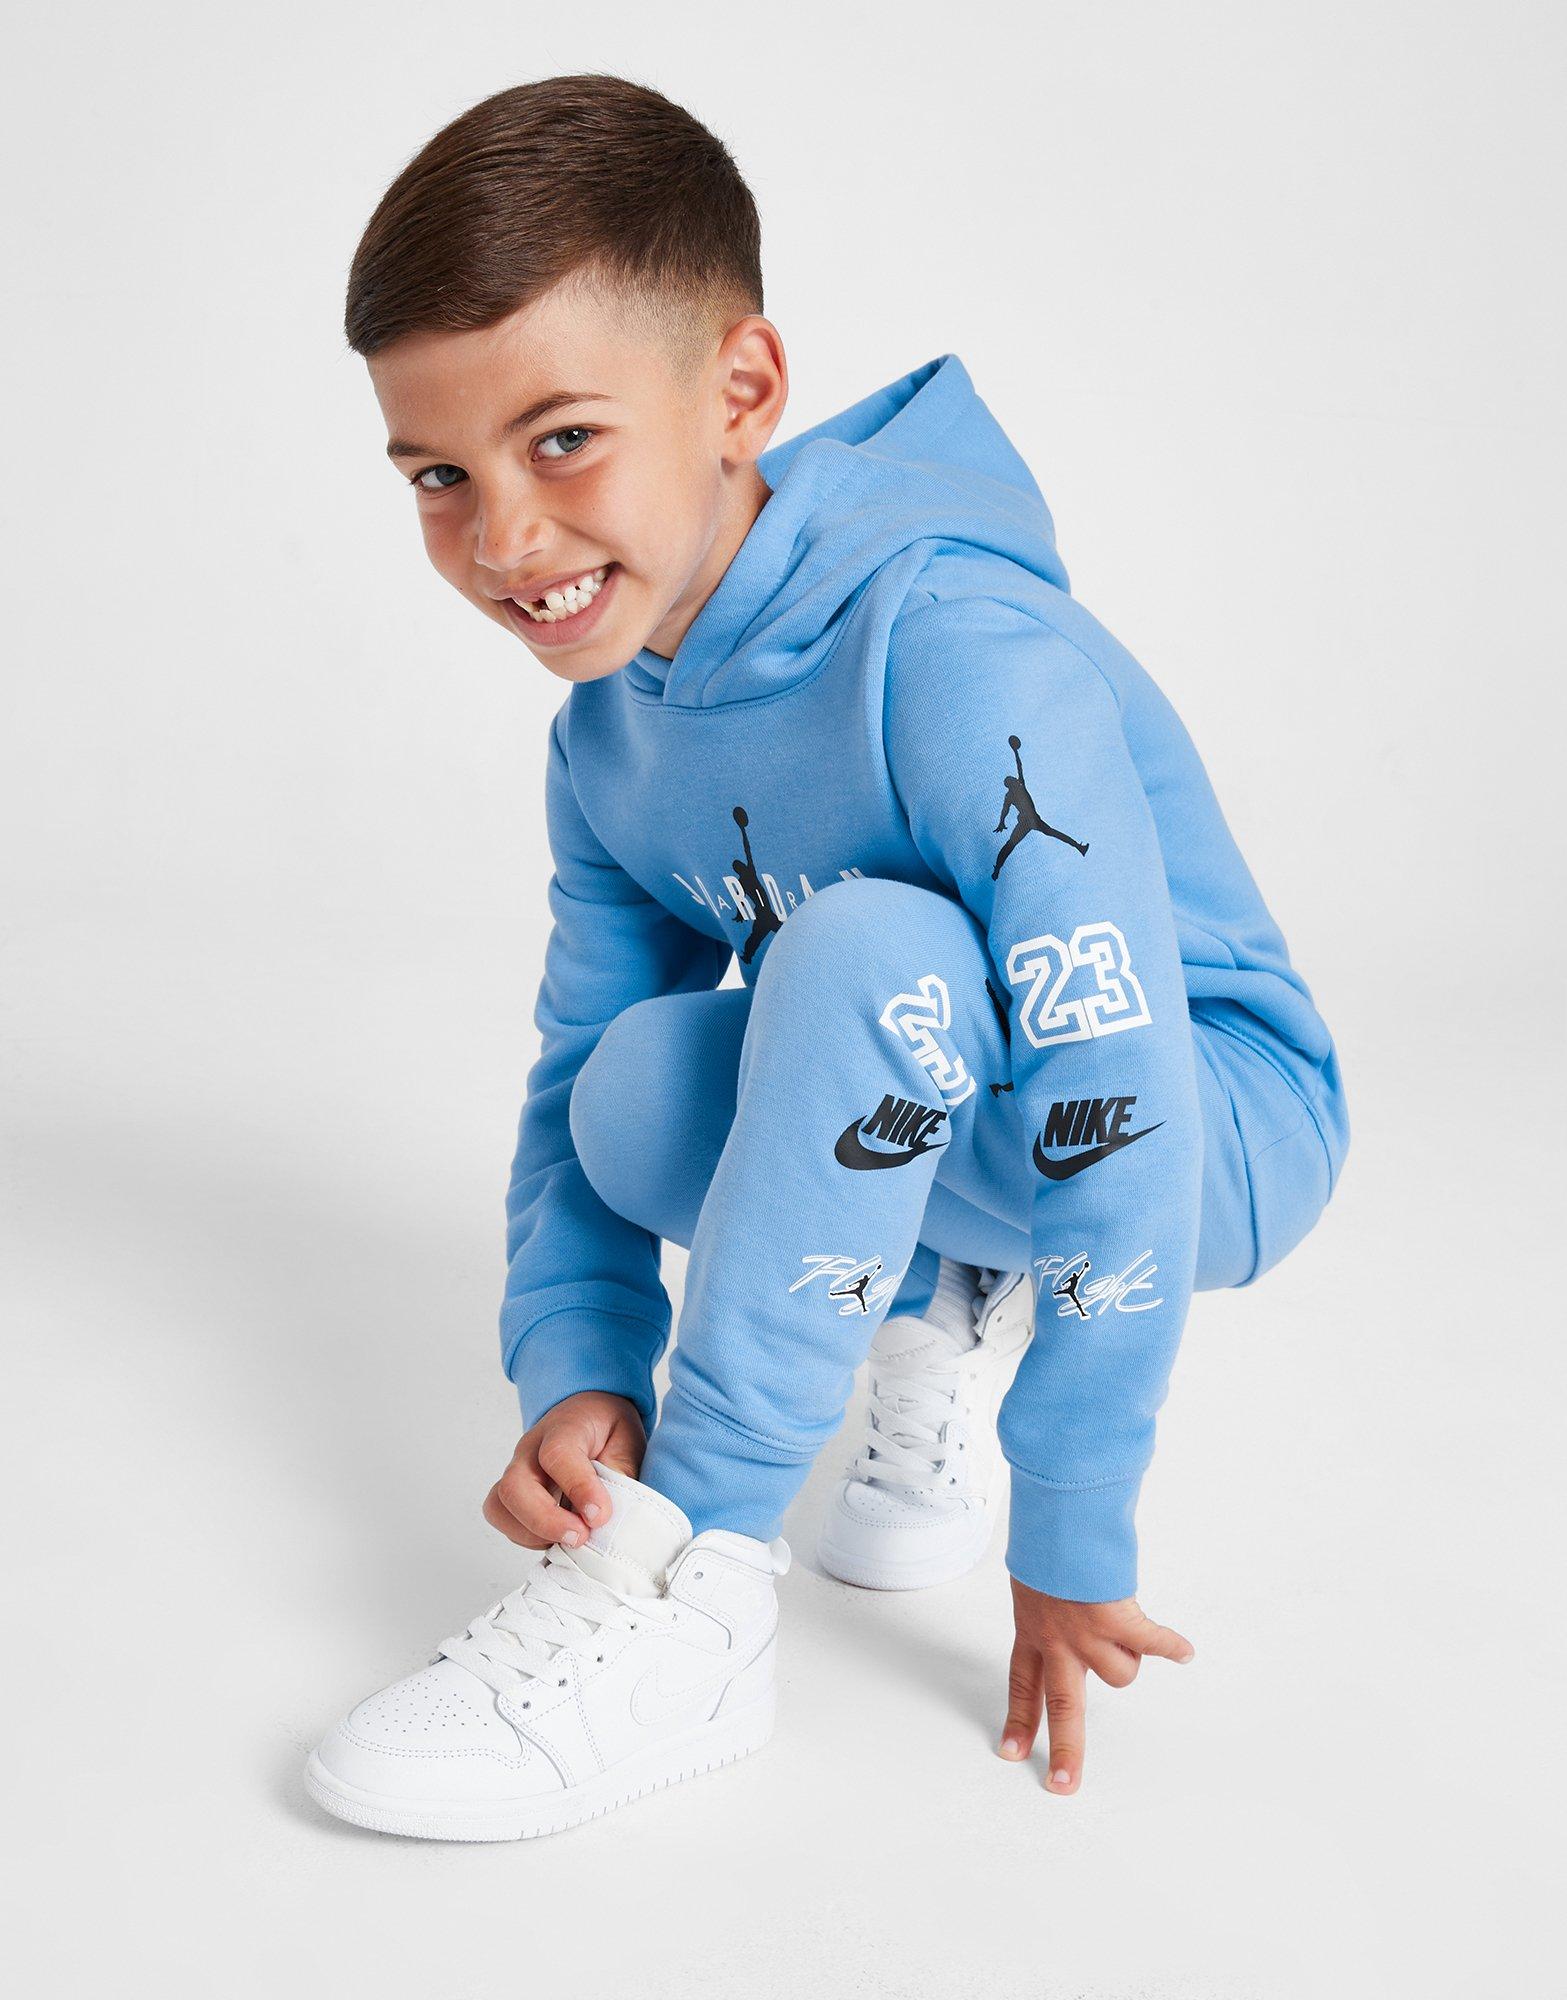 Nike Jordan Retro 4 University Blue, Size: 41-45